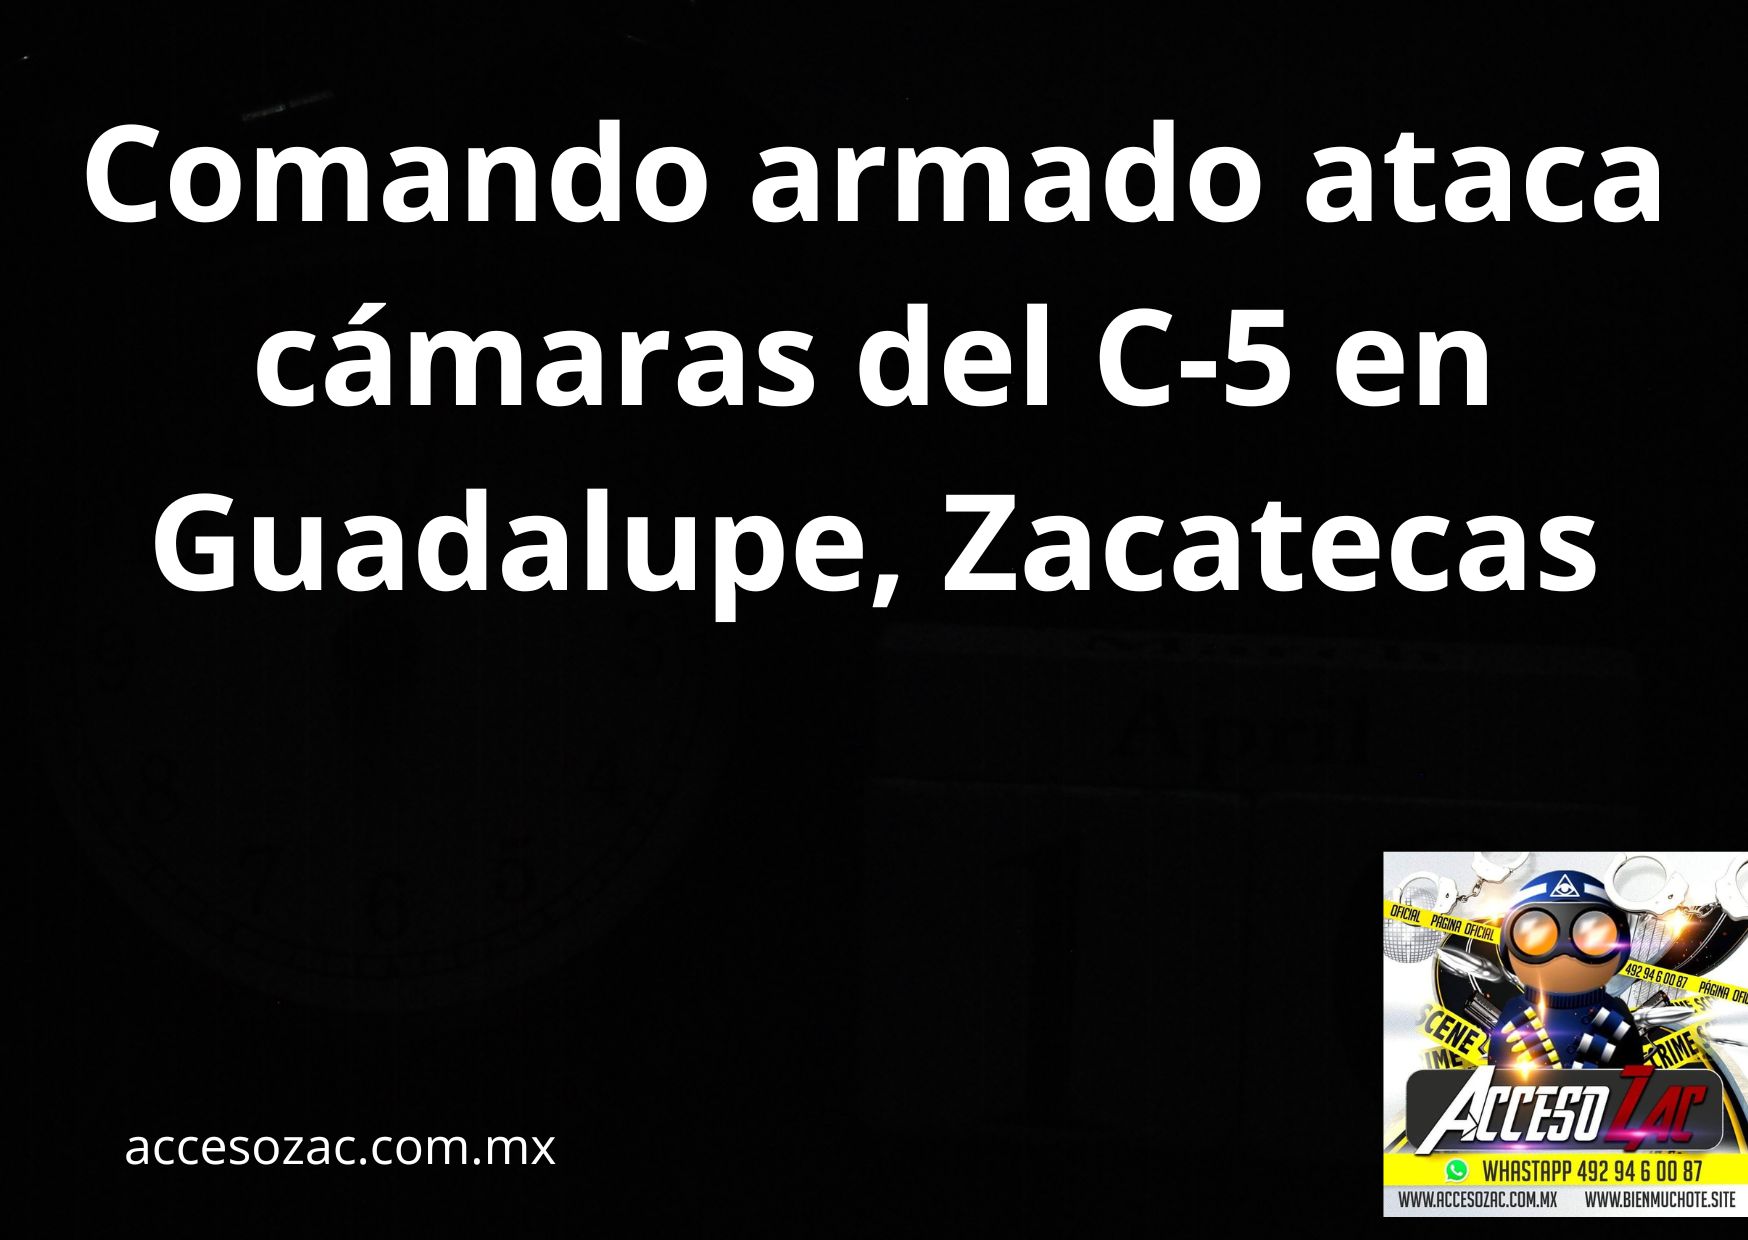 Comando armado ataca cámaras del C-5 en Guadalupe, Zacatecas